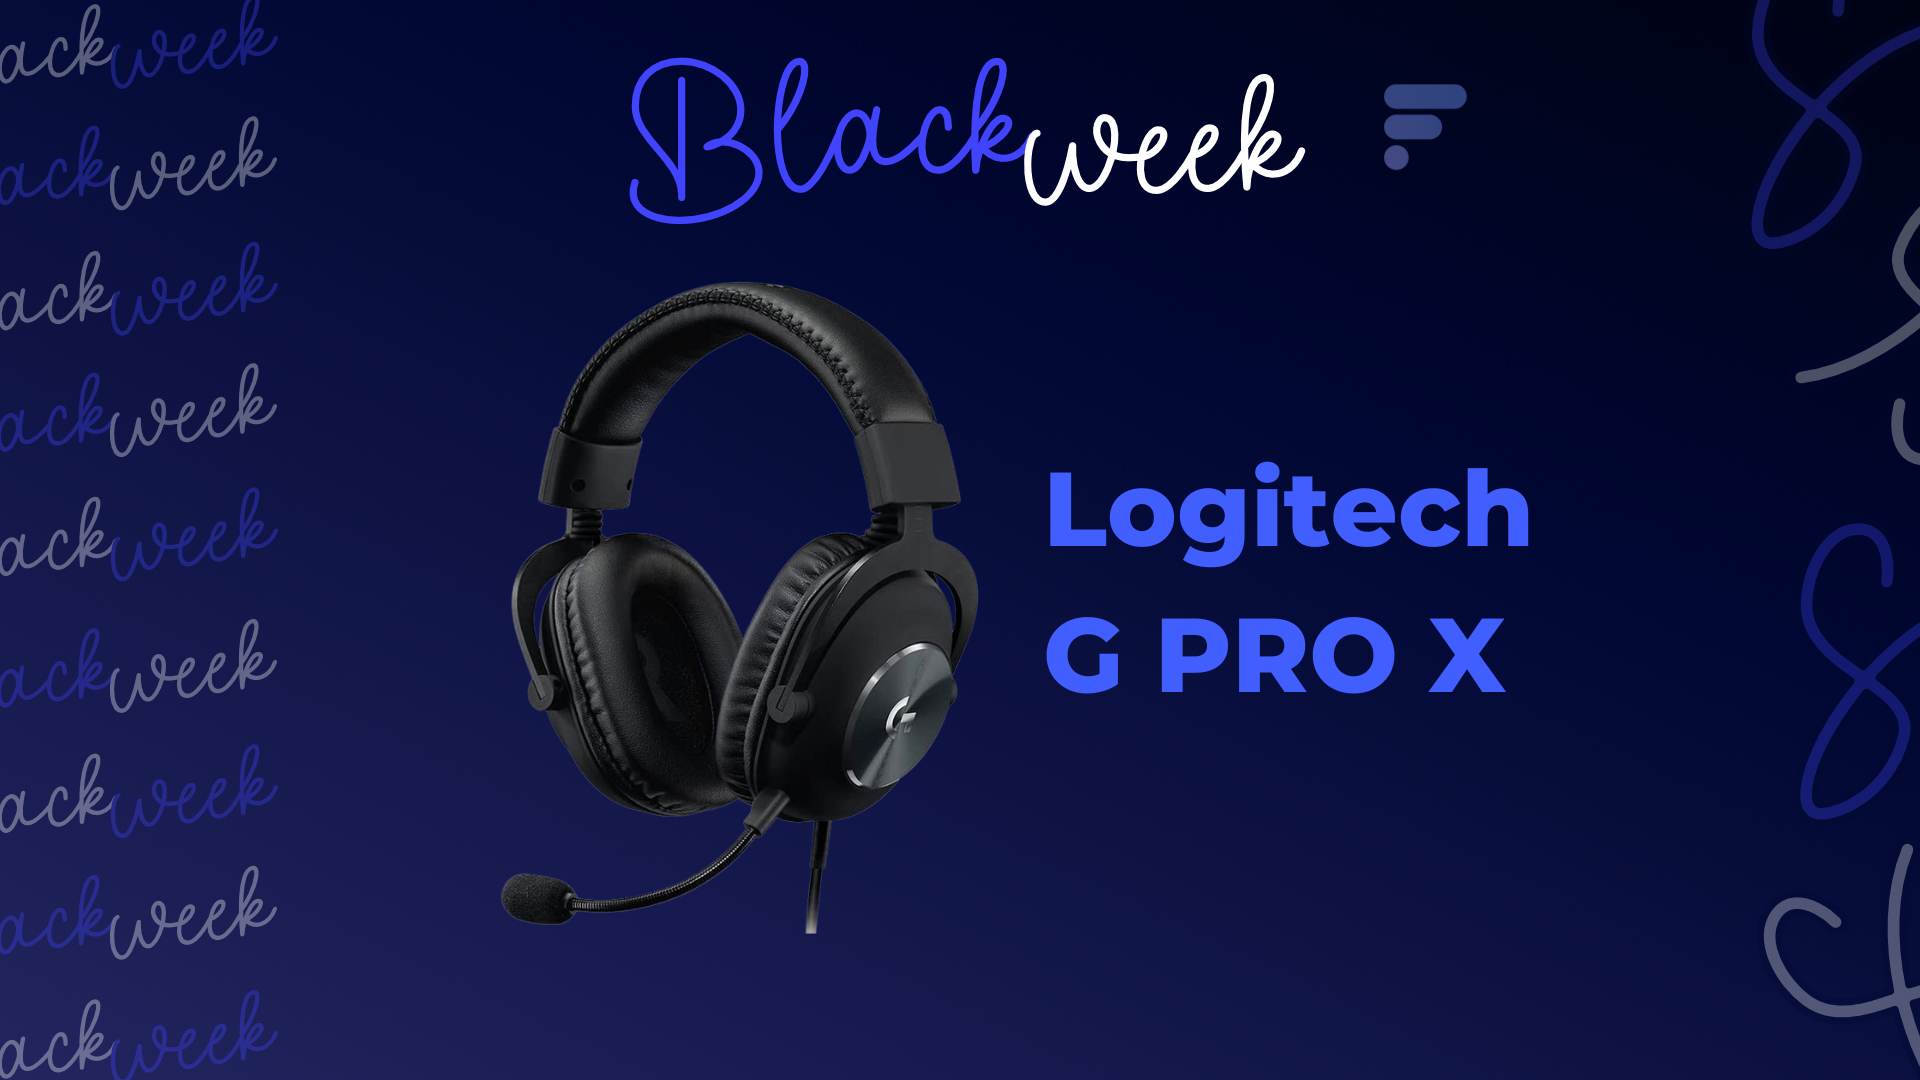 Le Logitech G Pro est un bon casque gaming, moins cher pendant les